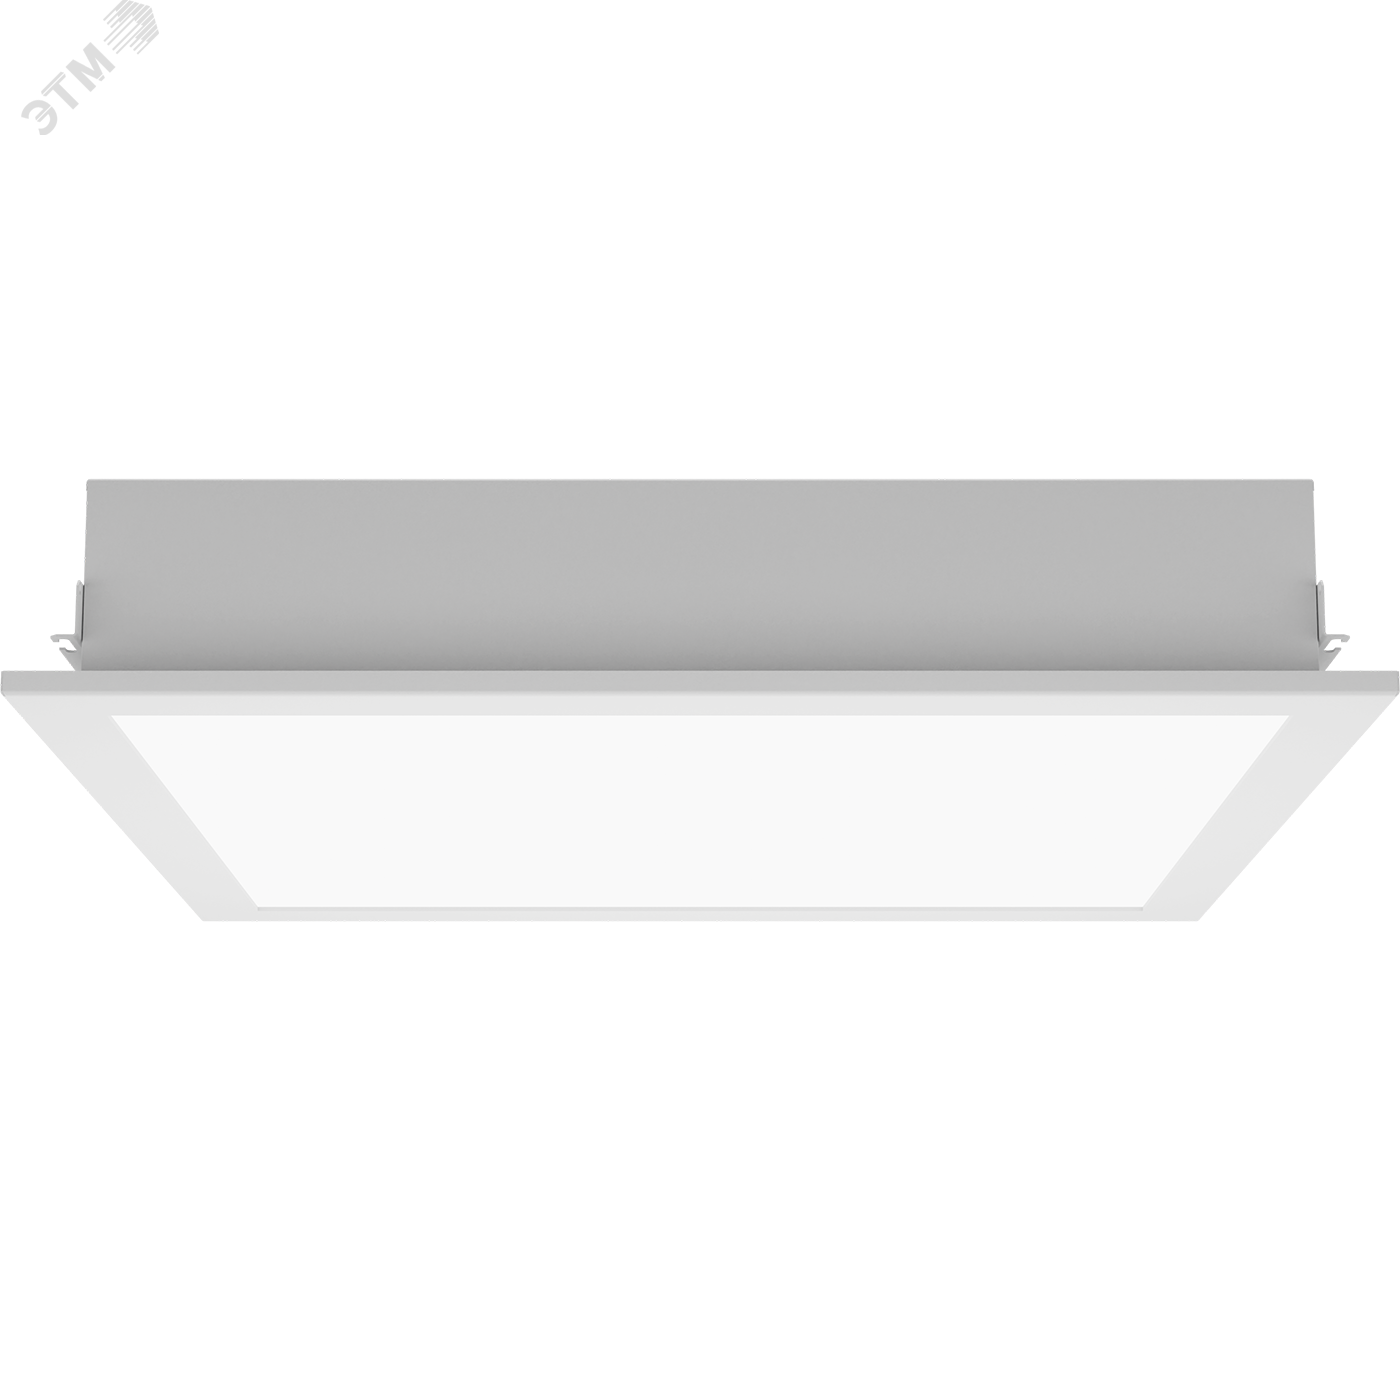 Светильник OWP/R 4x18 HF темперированное стекло IP54 встраиваемый опаловый ЭПРА 1373000180 Световые Технологии - превью 3